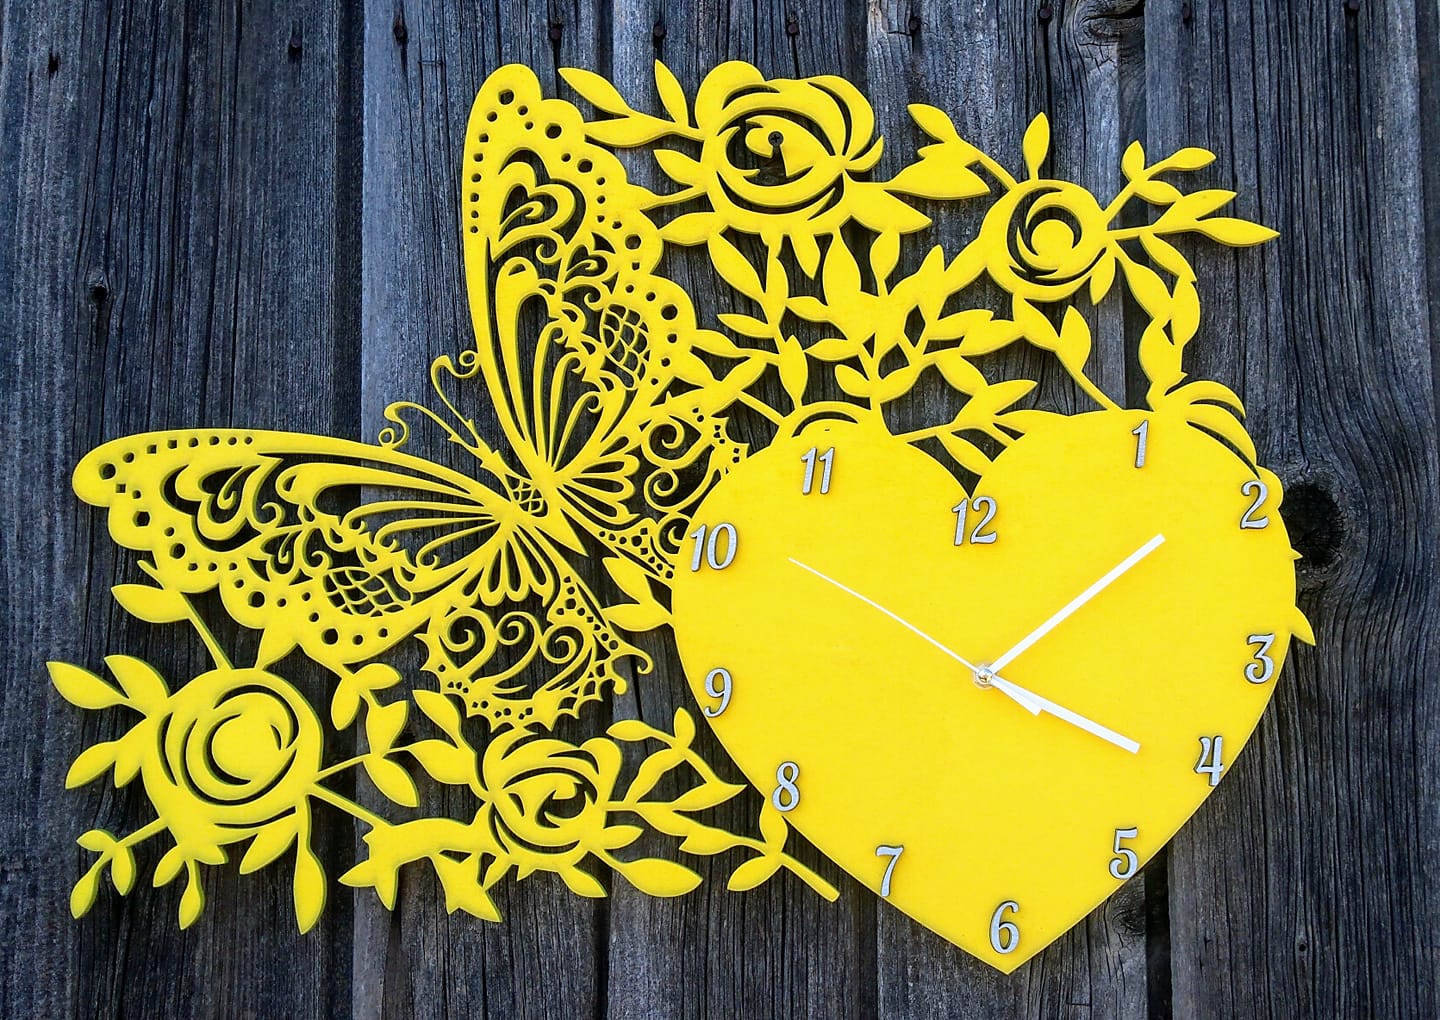 Đồng hồ treo tường trang trí bằng laser cắt với trái tim bướm và hoa